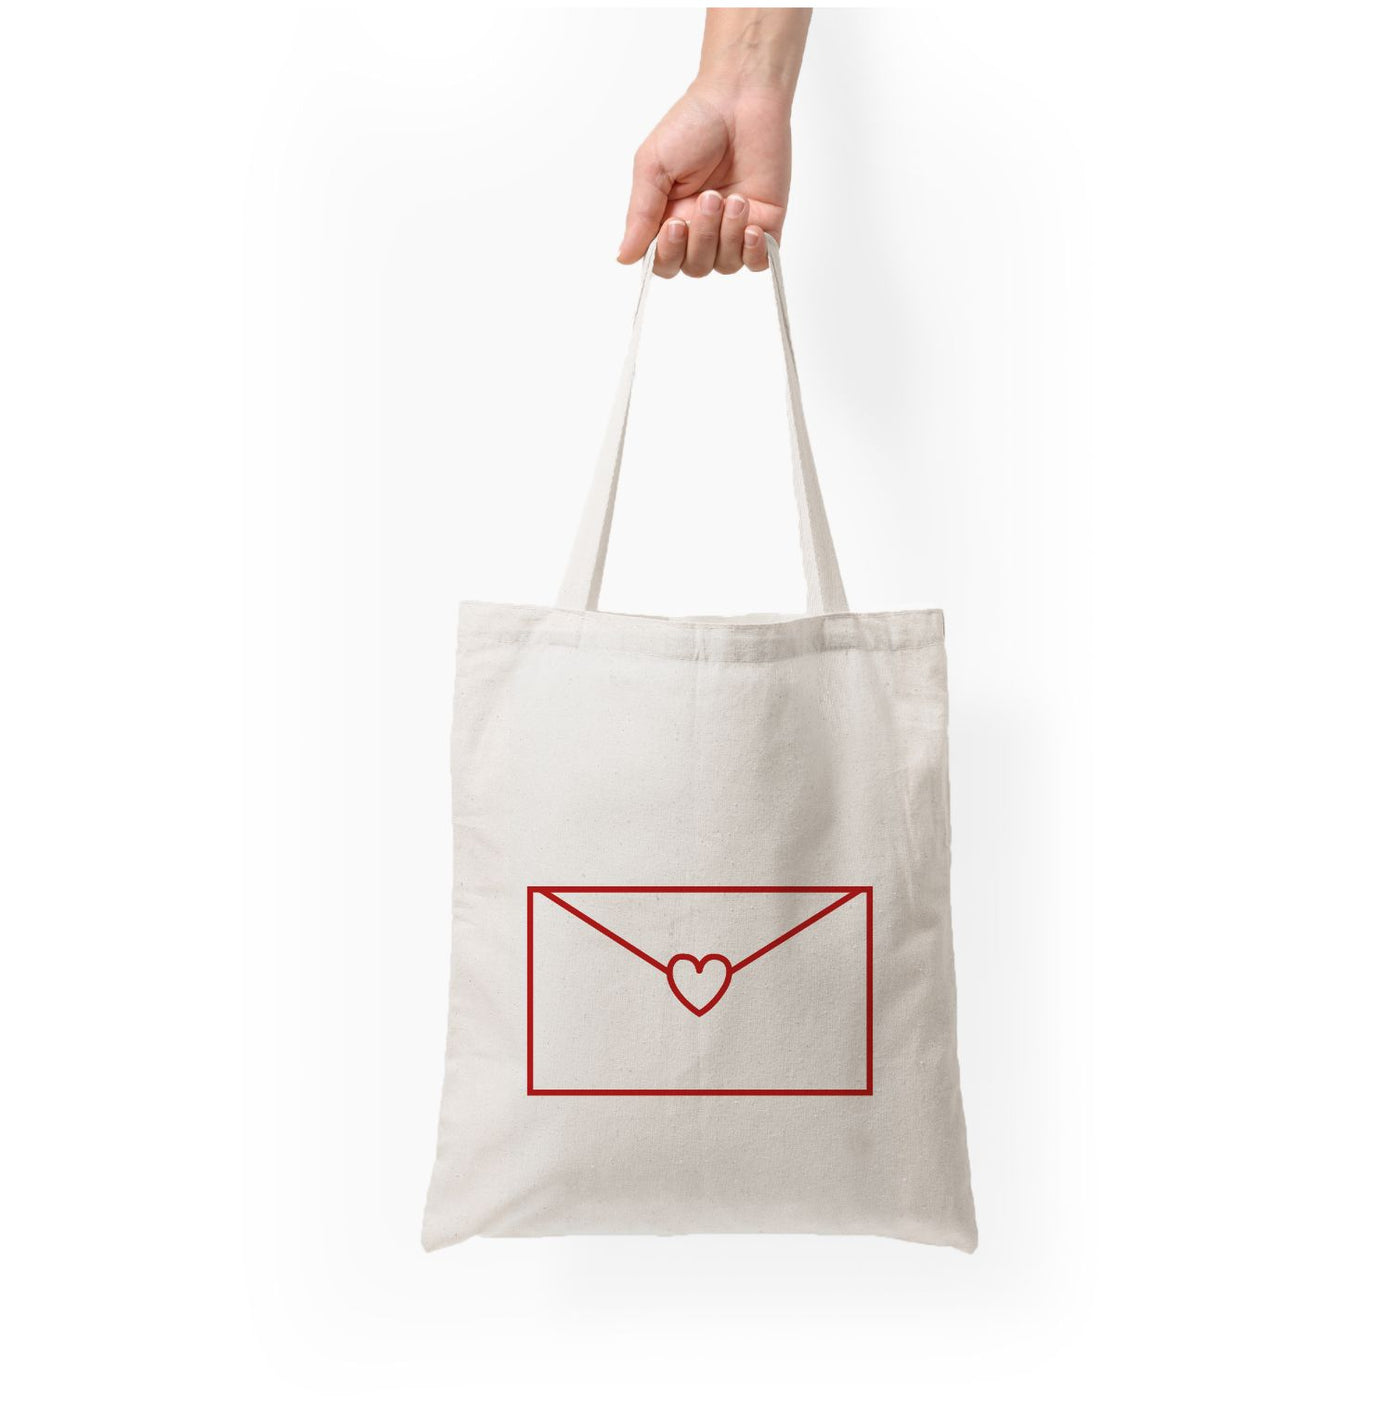 Love Email - Sabrina Carpenter Tote Bag